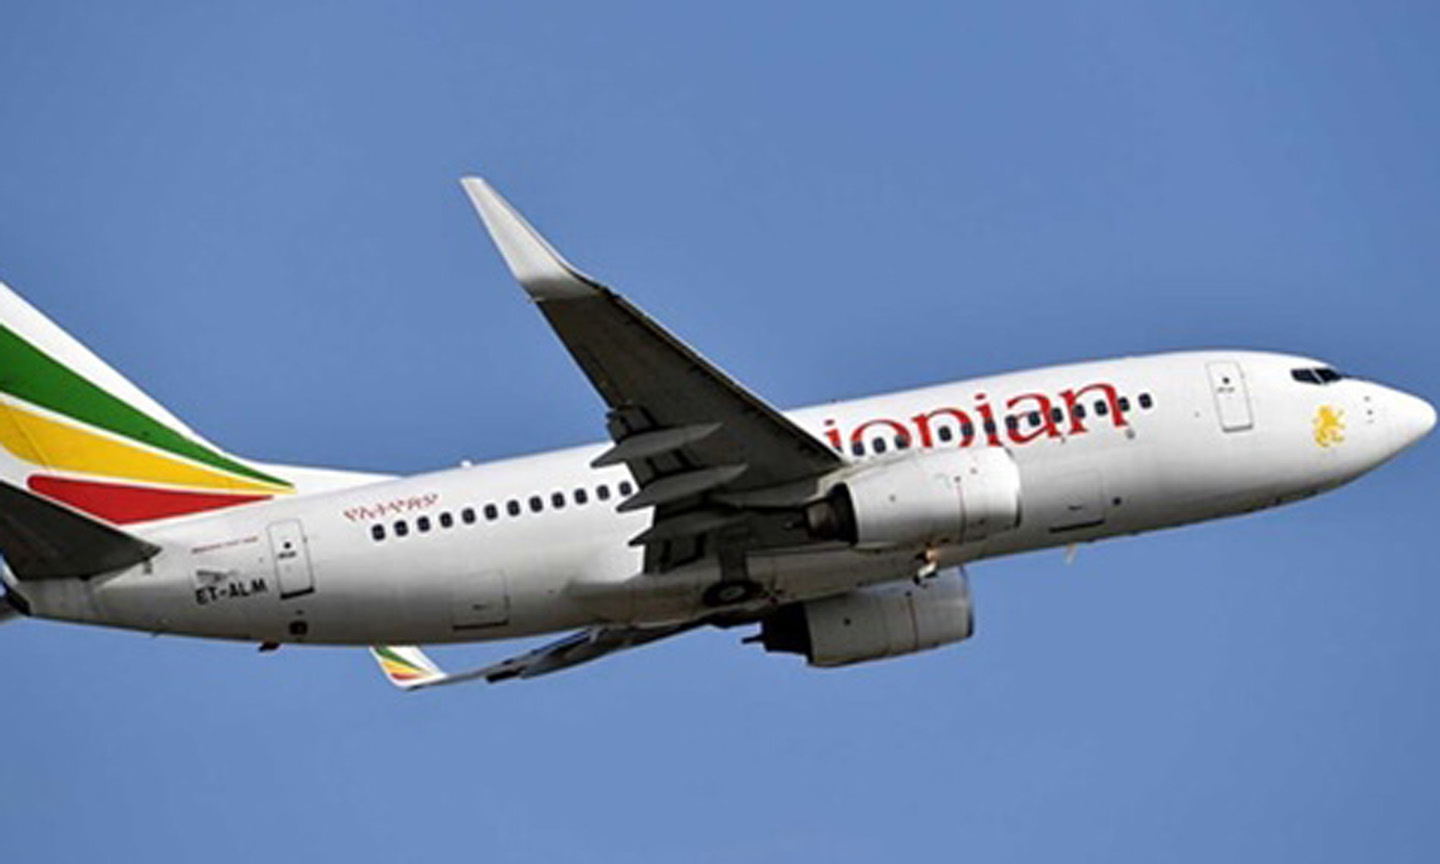  Một máy bay của hãng hàng không Ethiopian Airlines. Ảnh: Reuters.